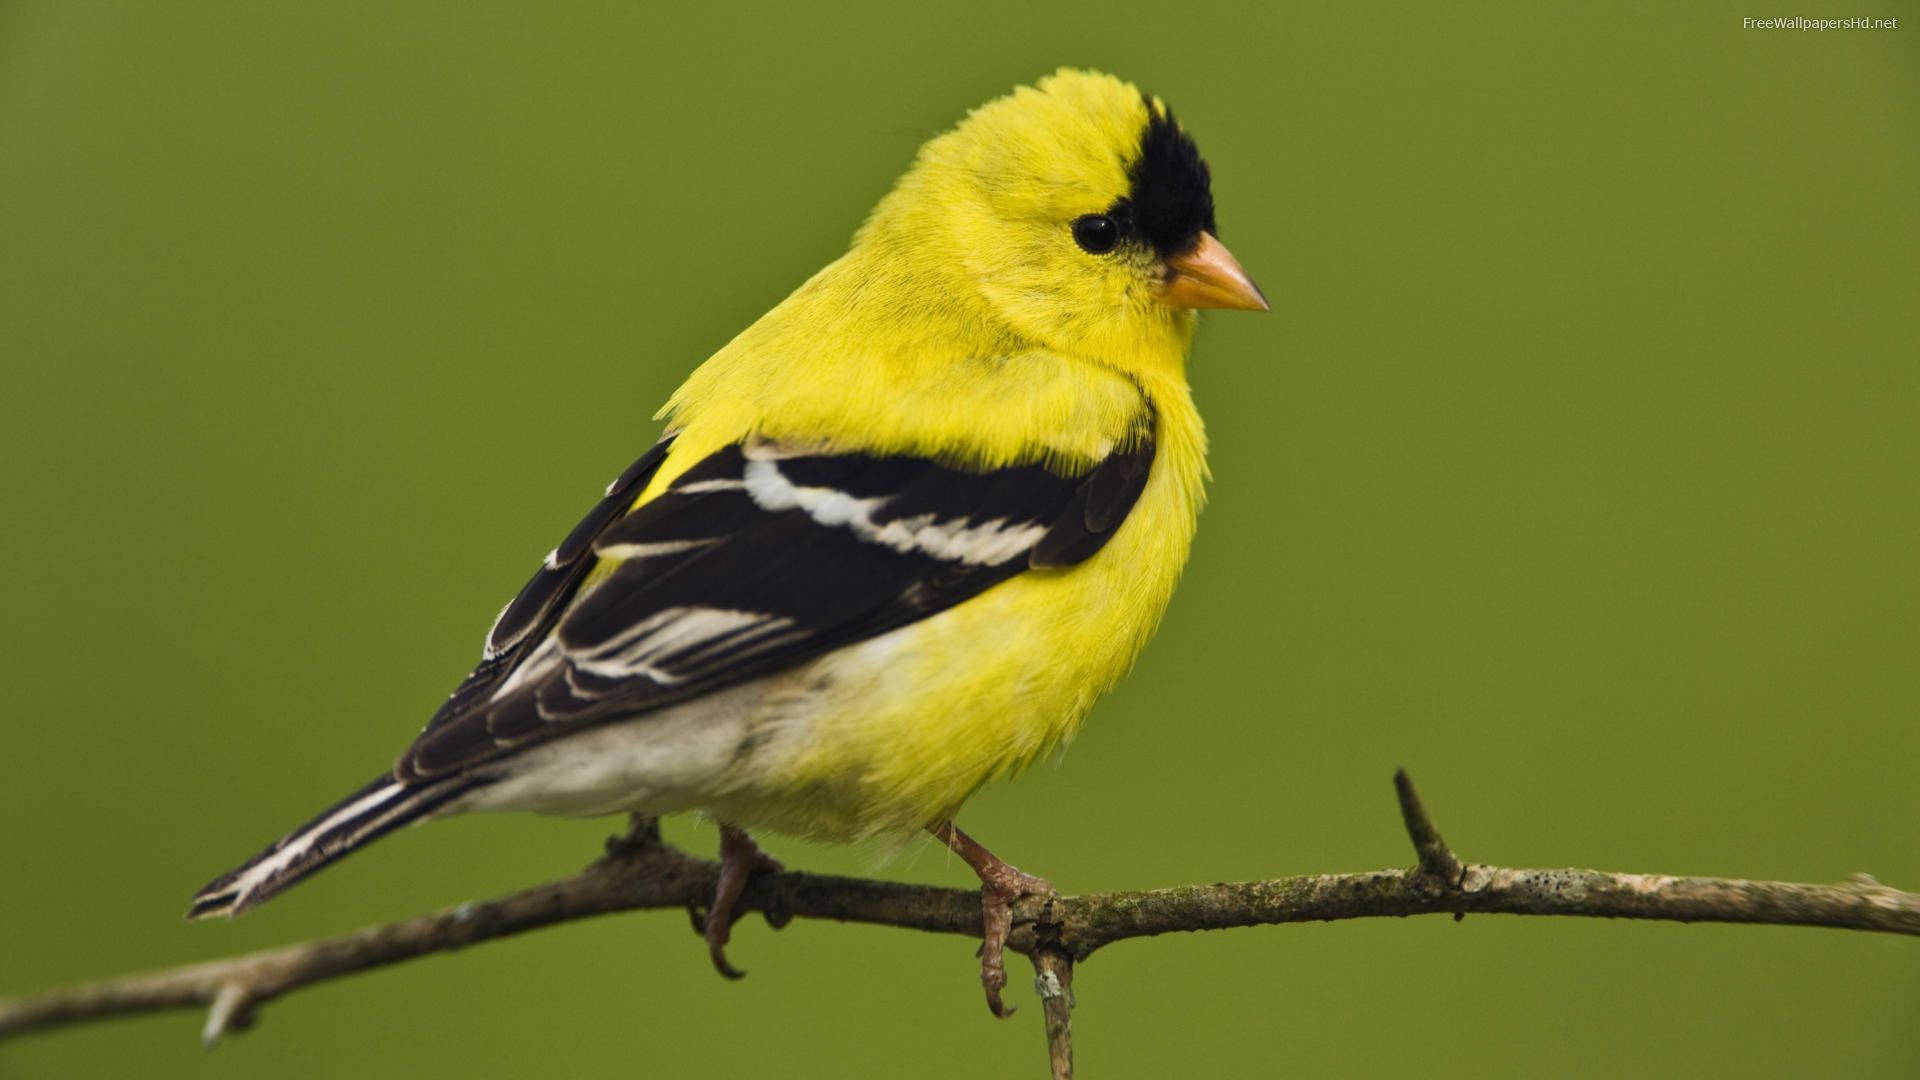 Yellow Bird With Orange Beak